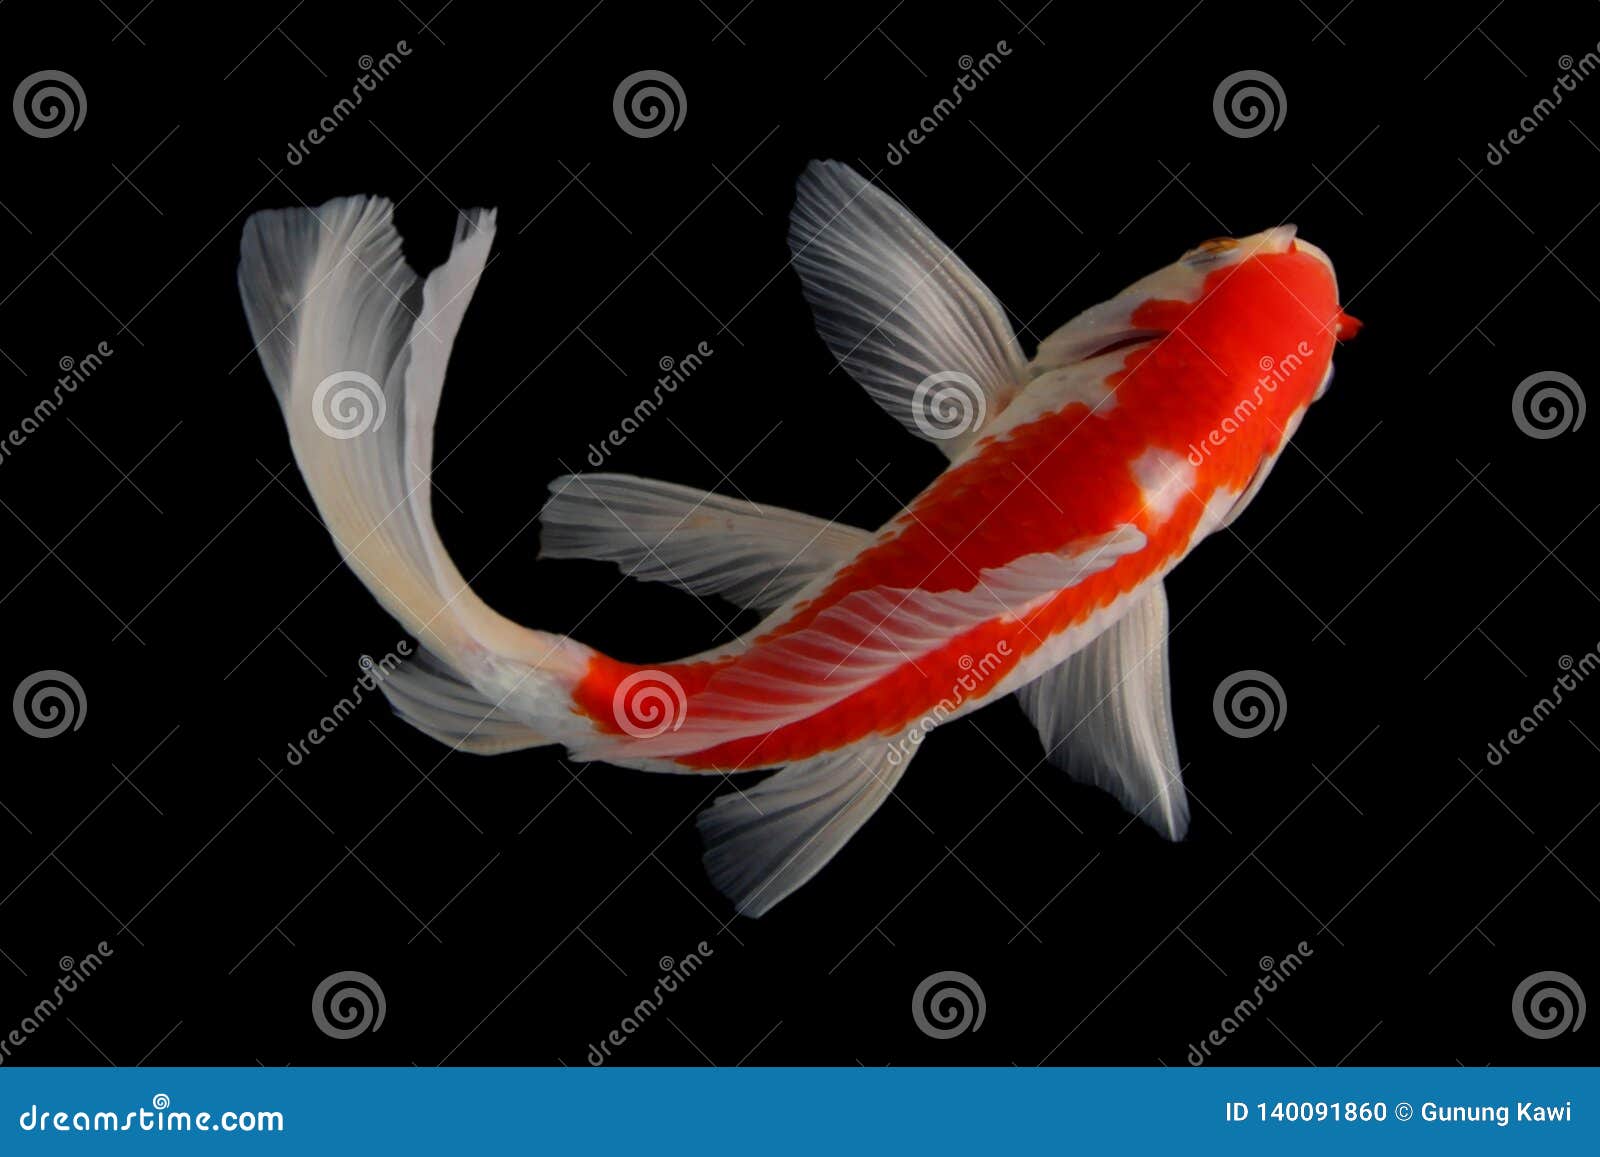 Koi fish Black background stock photo. Image of carp